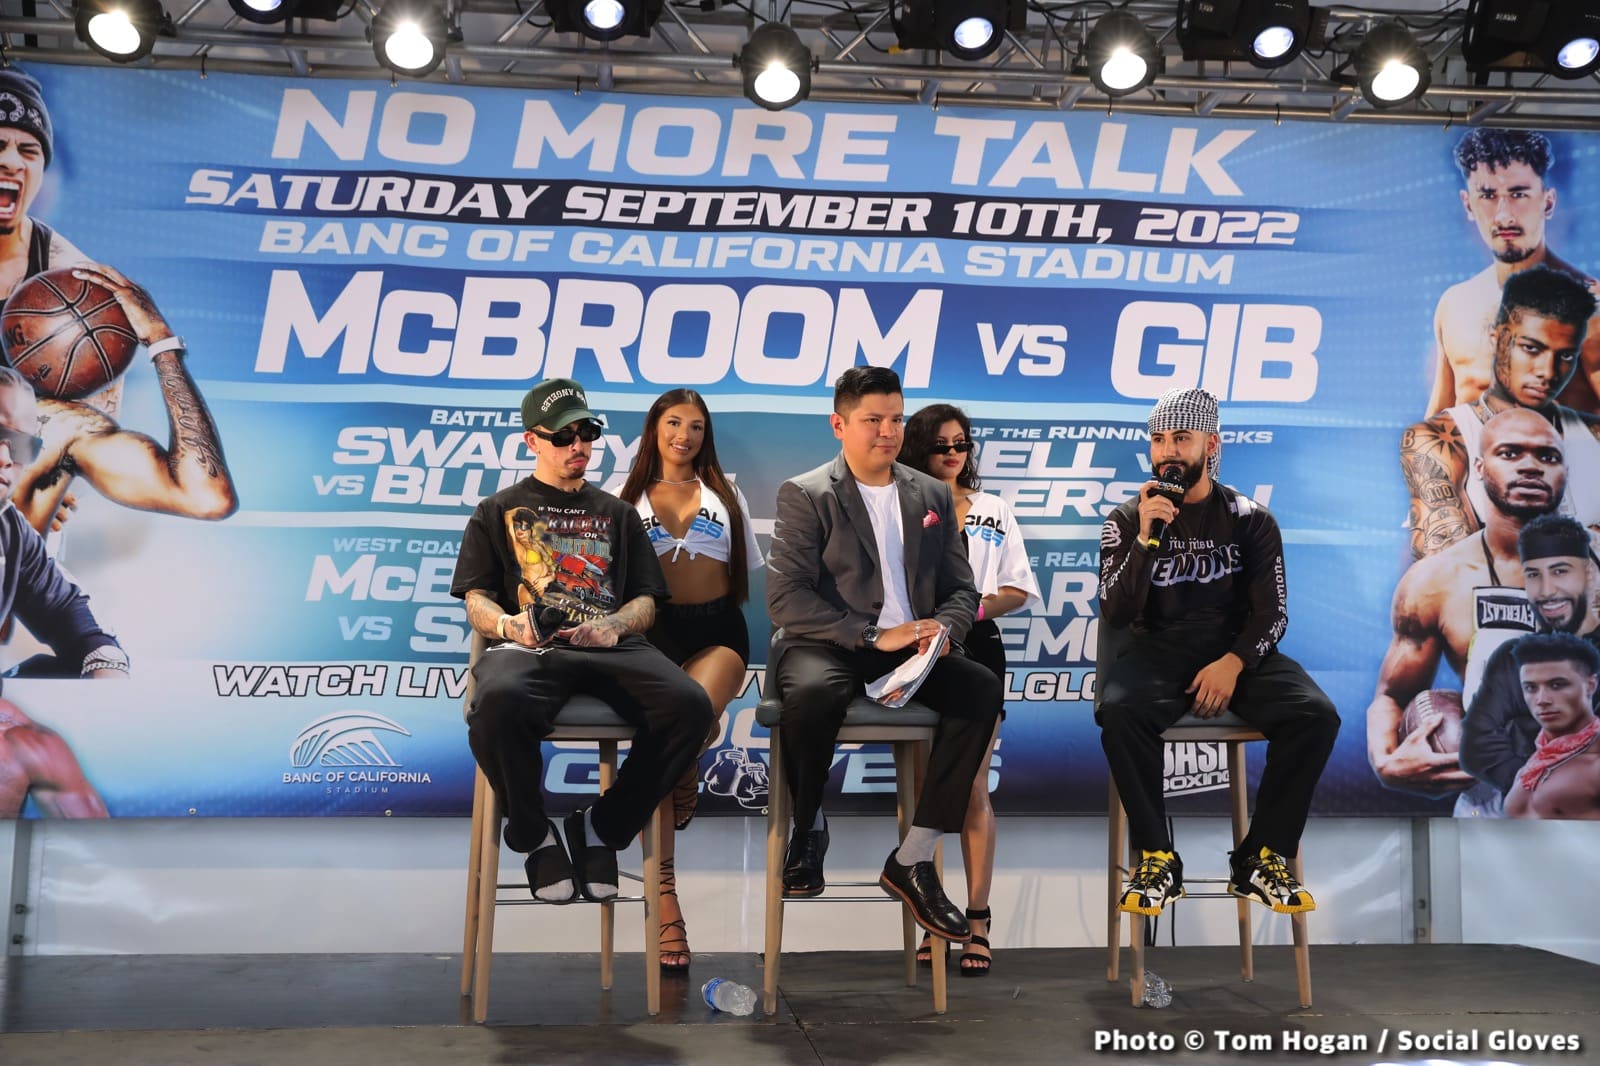 Photos / Video: Social Gloves: ‘No More Talk’ Gib - McBroom Press Conference